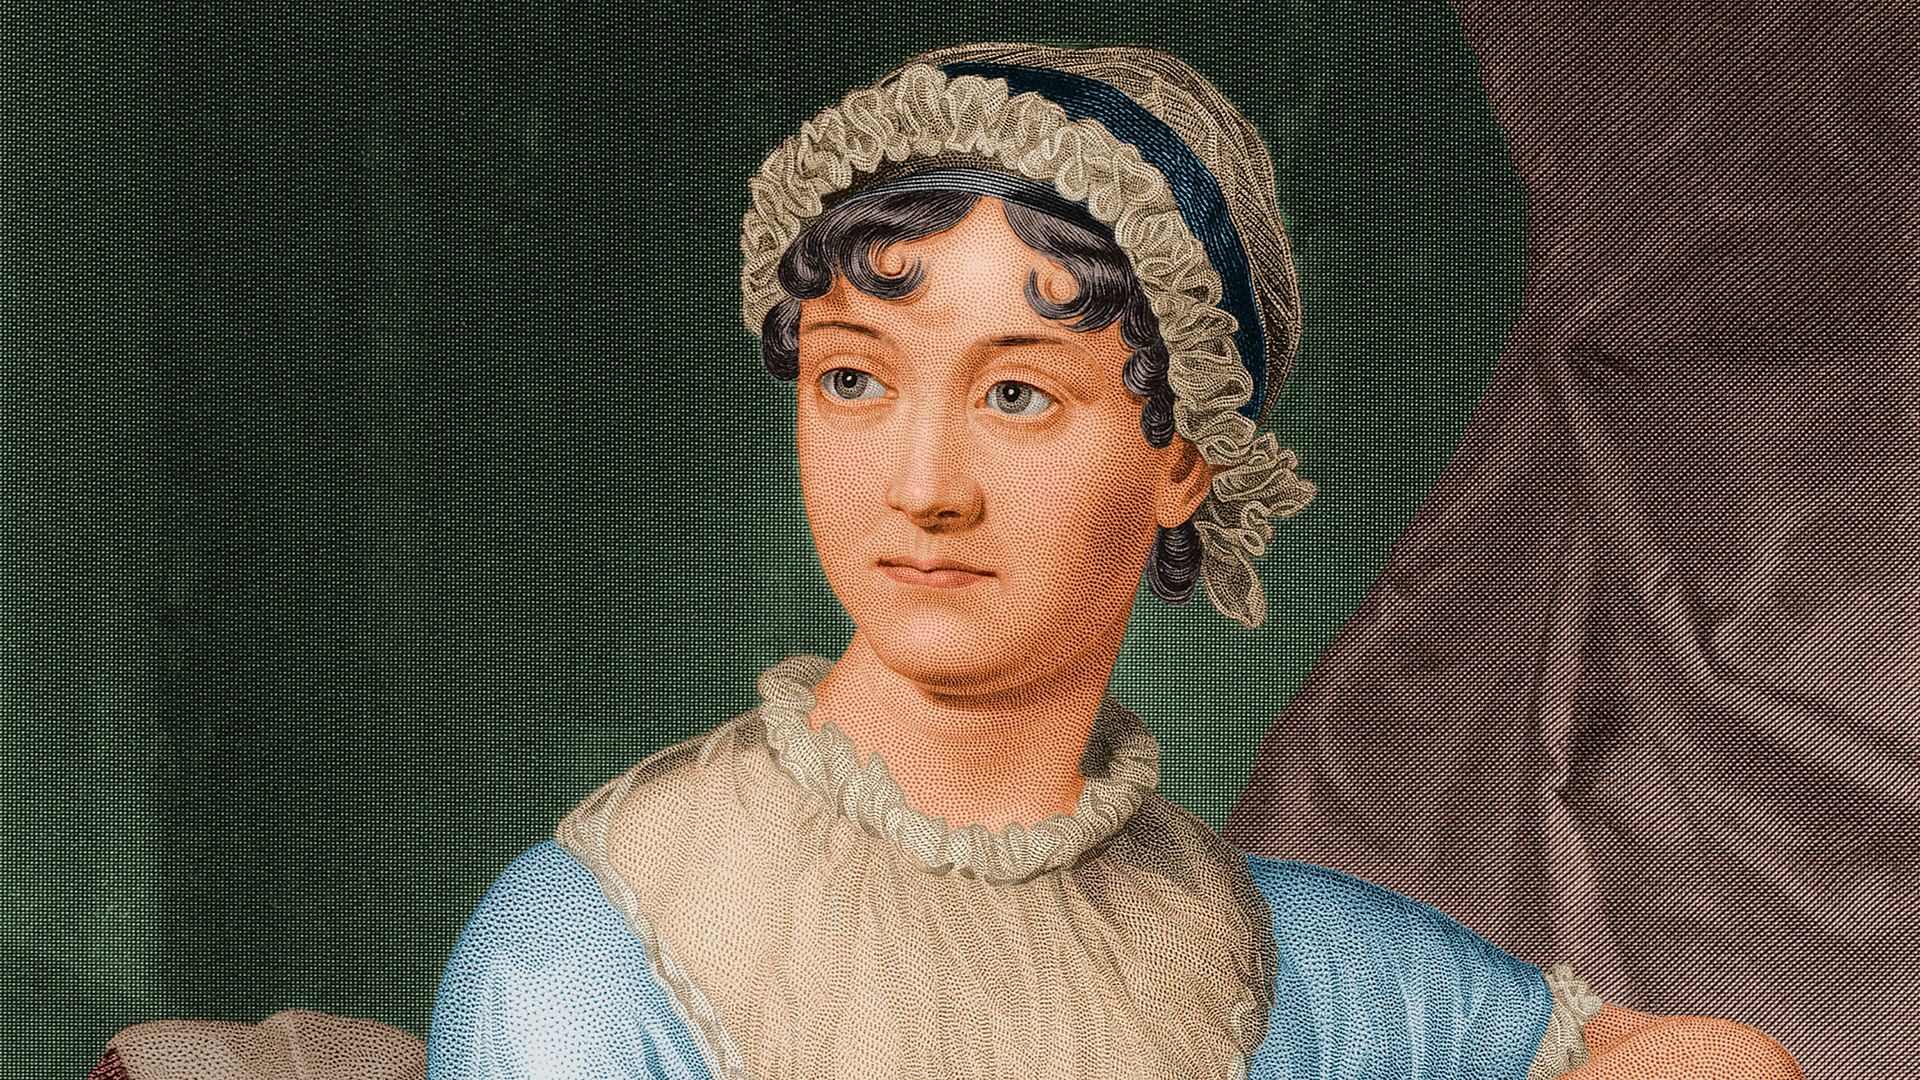 Jane Austen, una eterna referente del género romántico a través de obras como "Orgullo y prejuicio". (Getty Images)